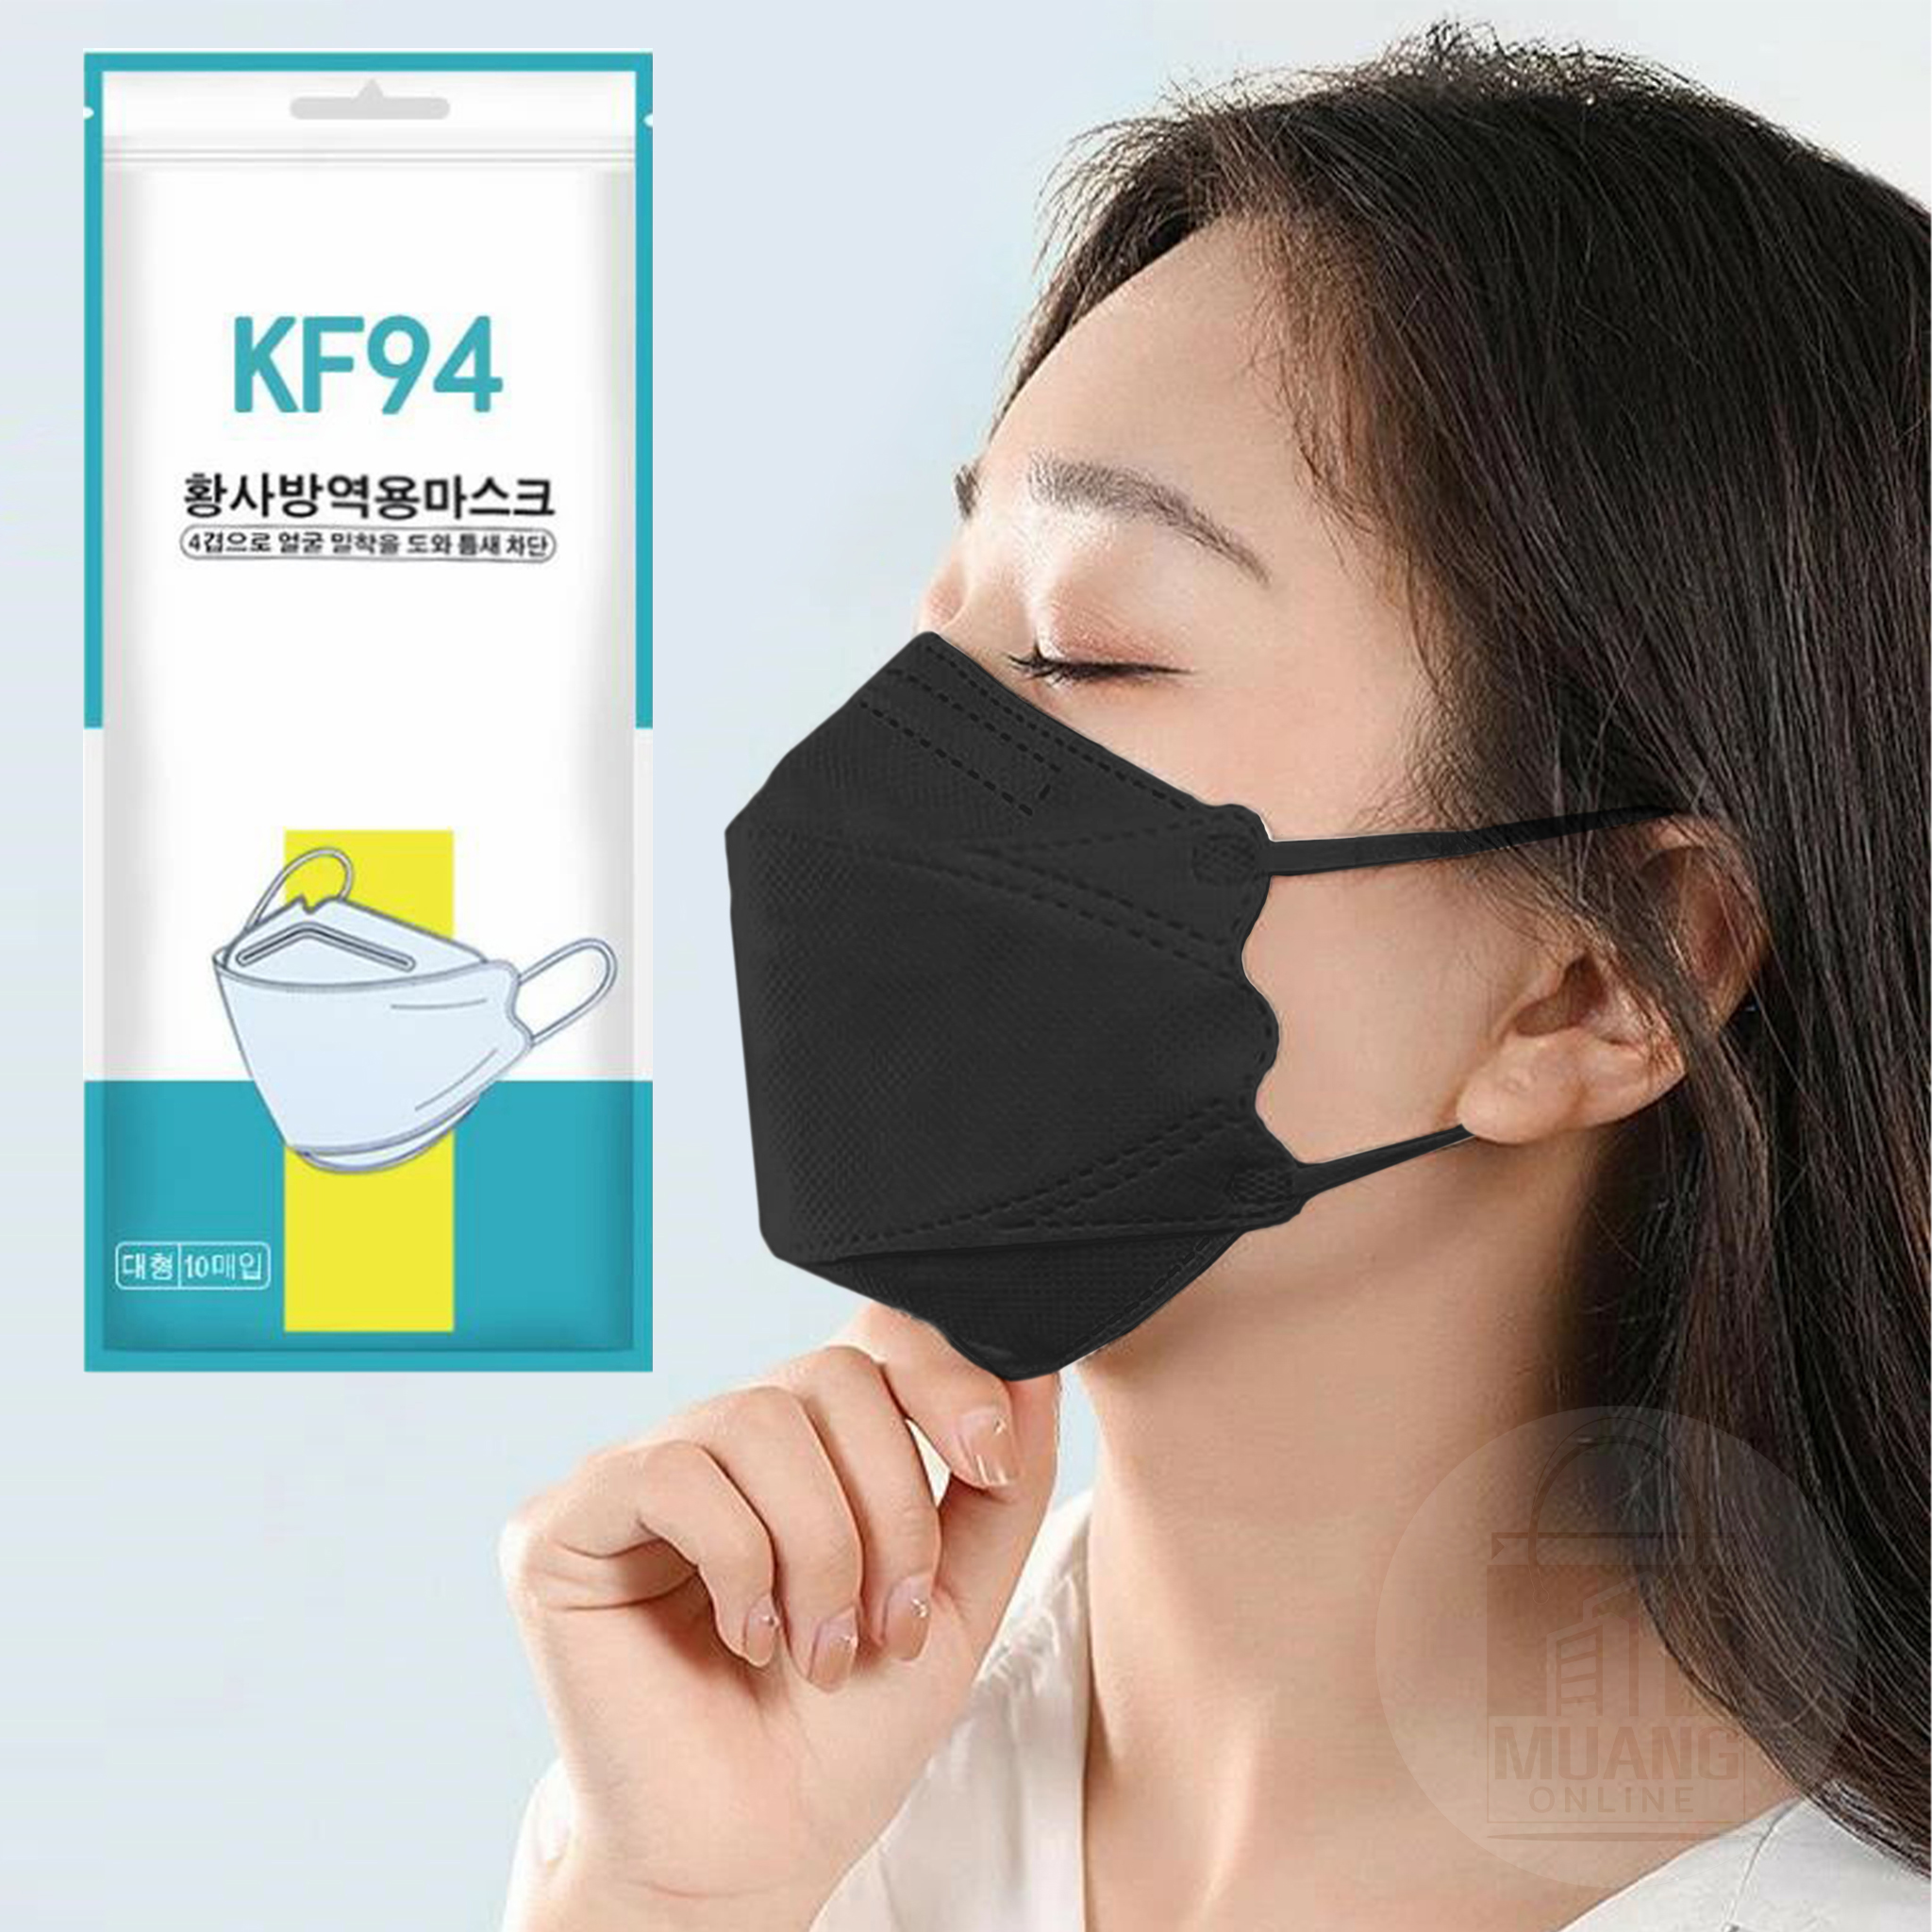 หน้ากากอนามัยเกาหลี KF94 กันไวรัส กันฝุ่น PM2.5 (แพค 10 ชิ้น)